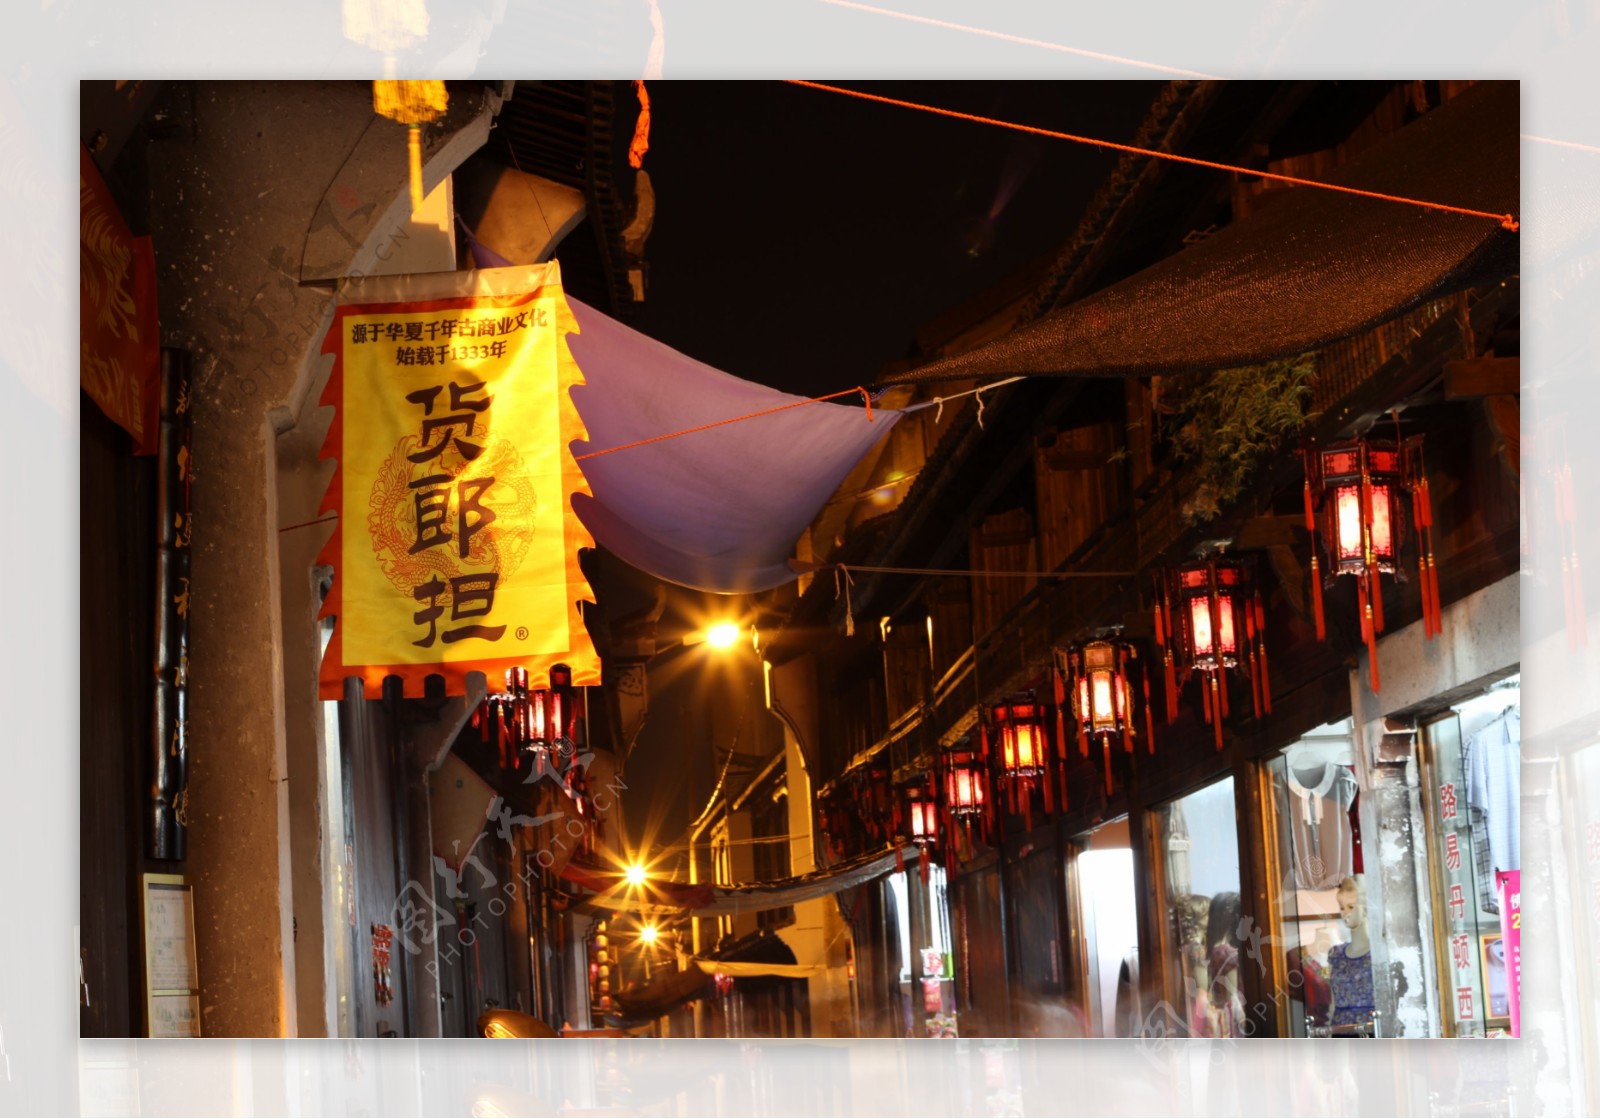 义乌市佛堂镇老街夜景图片